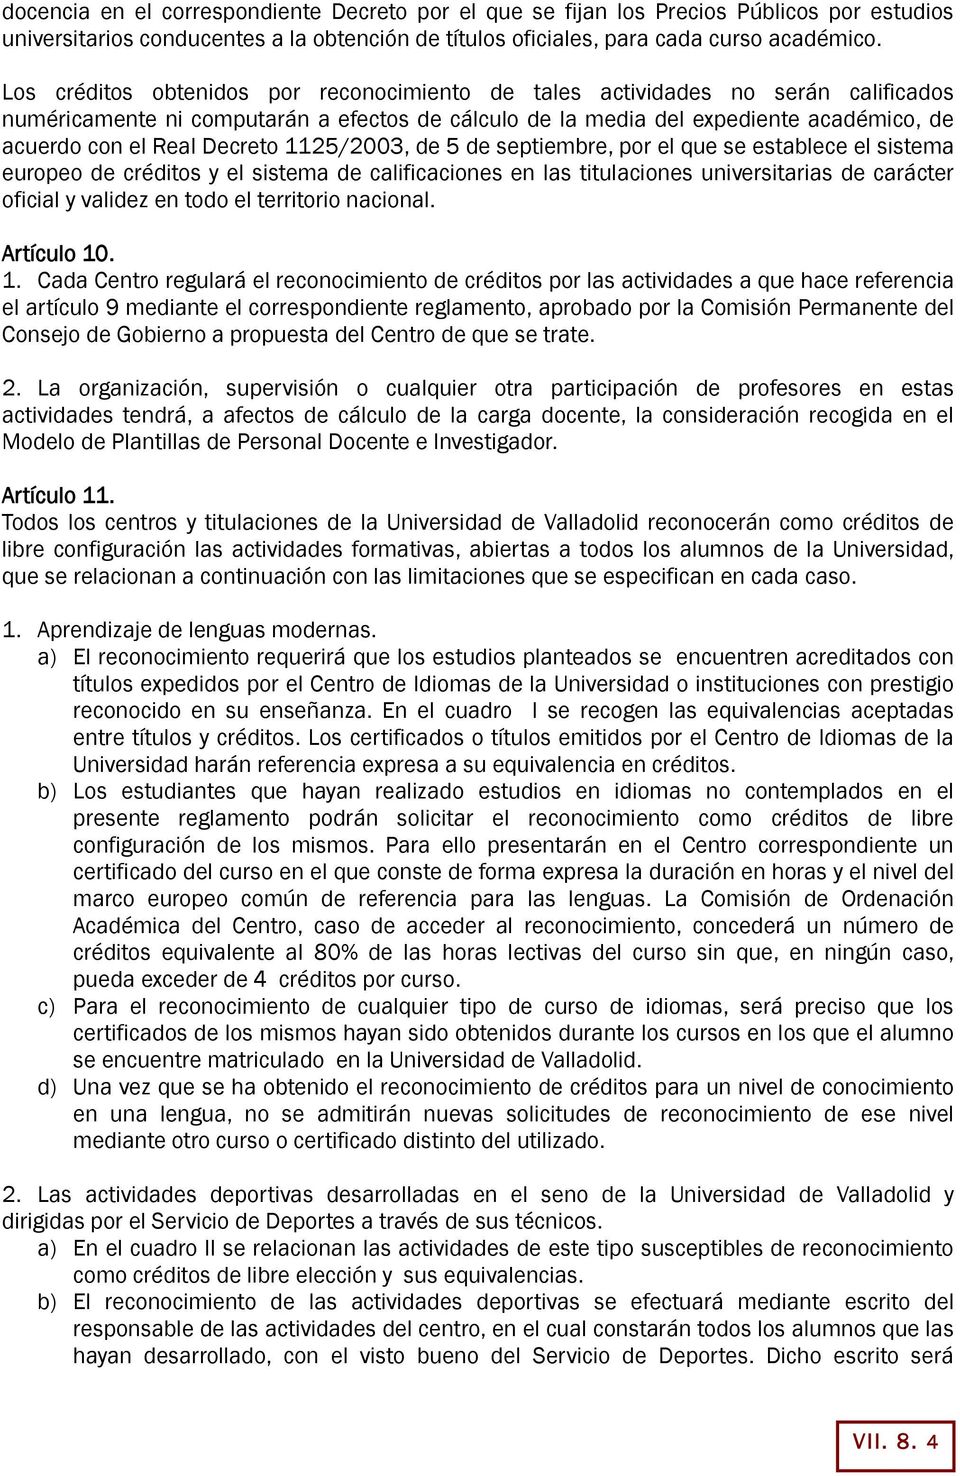 Decreto 1125/2003, de 5 de septiembre, por el que se establece el sistema europeo de créditos y el sistema de calificaciones en las titulaciones universitarias de carácter oficial y validez en todo